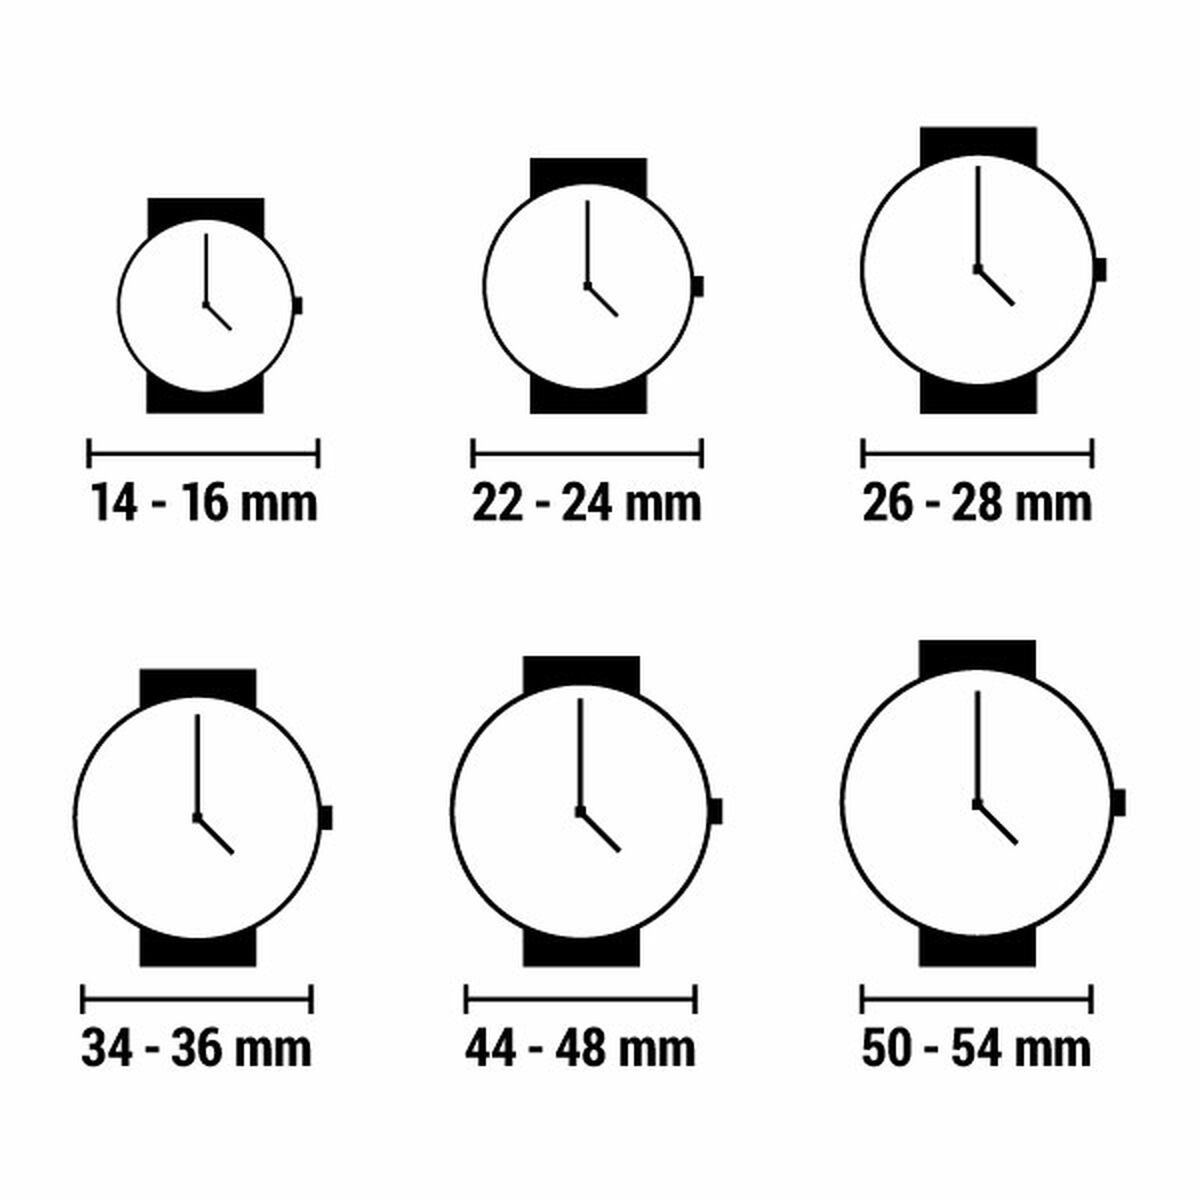 Horloge Dames Time Force TF2576L-02M (Ø 33 mm)